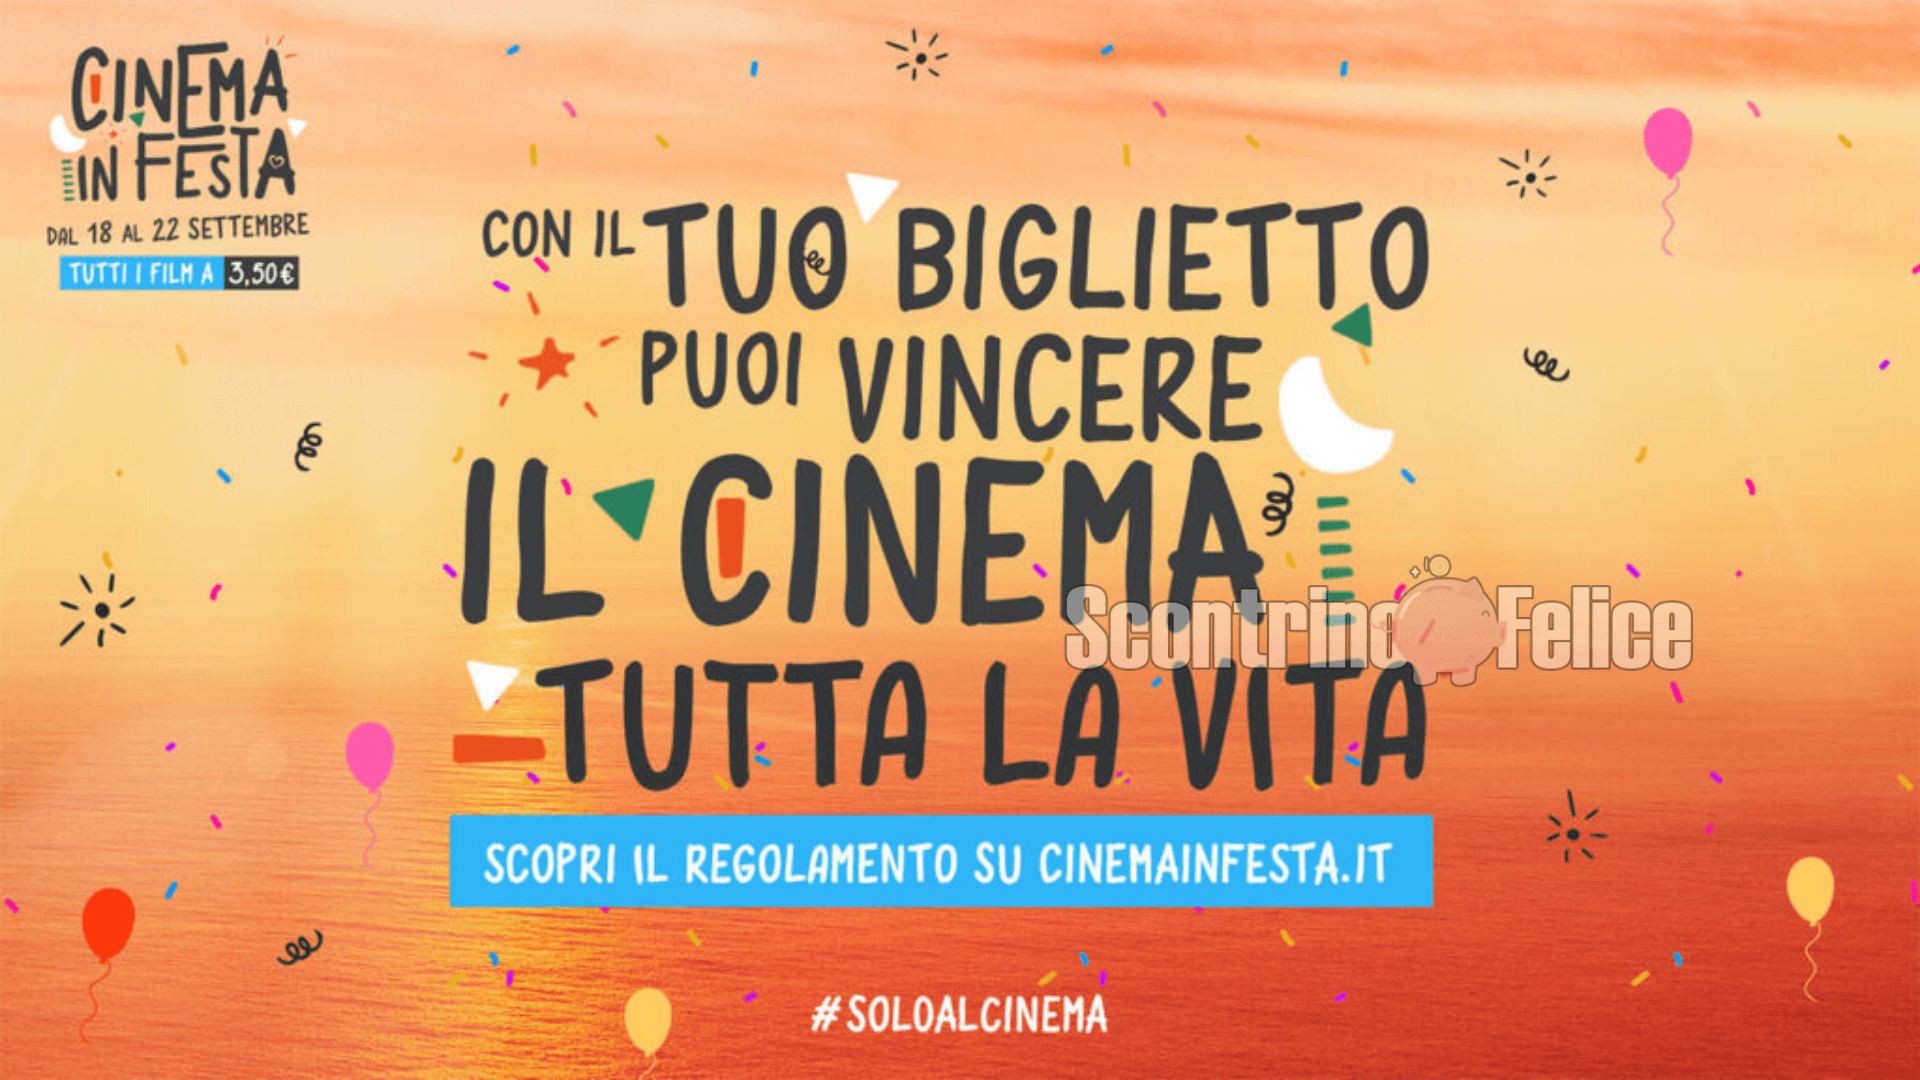 Cinema in Festa 2022: biglietti a solo 3,50 euro e vinci cinema GRATIS per tutta la vita! 6